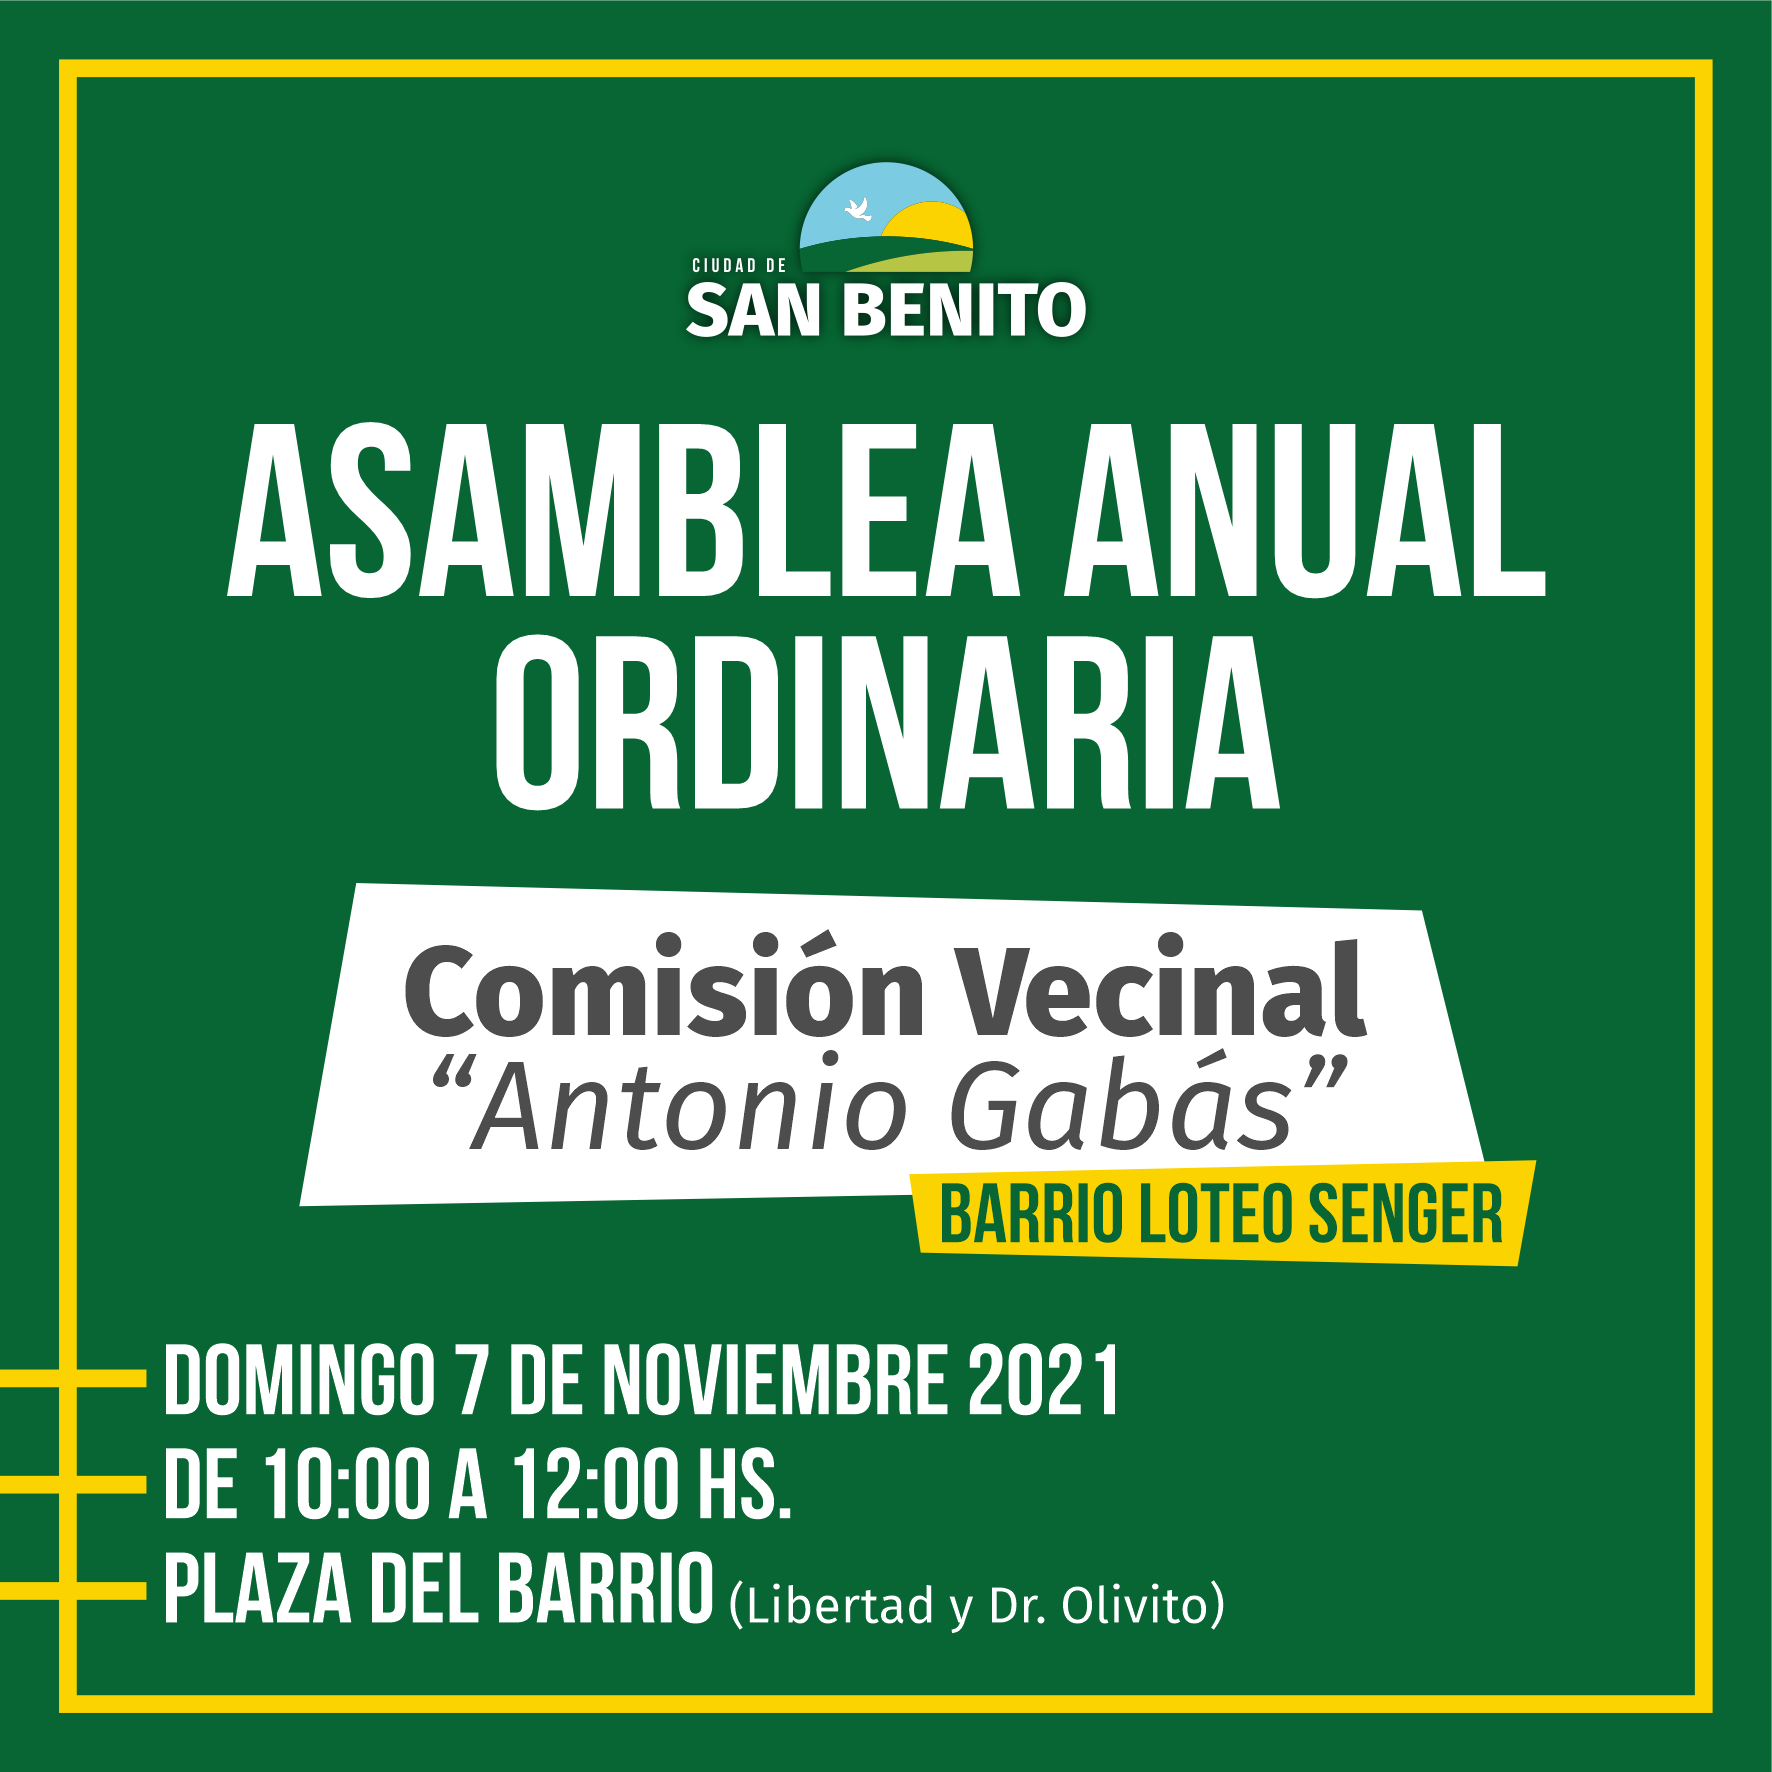 Asamblea Anual Ordinaria - Comisión Vecinal "Antonio Gabás"